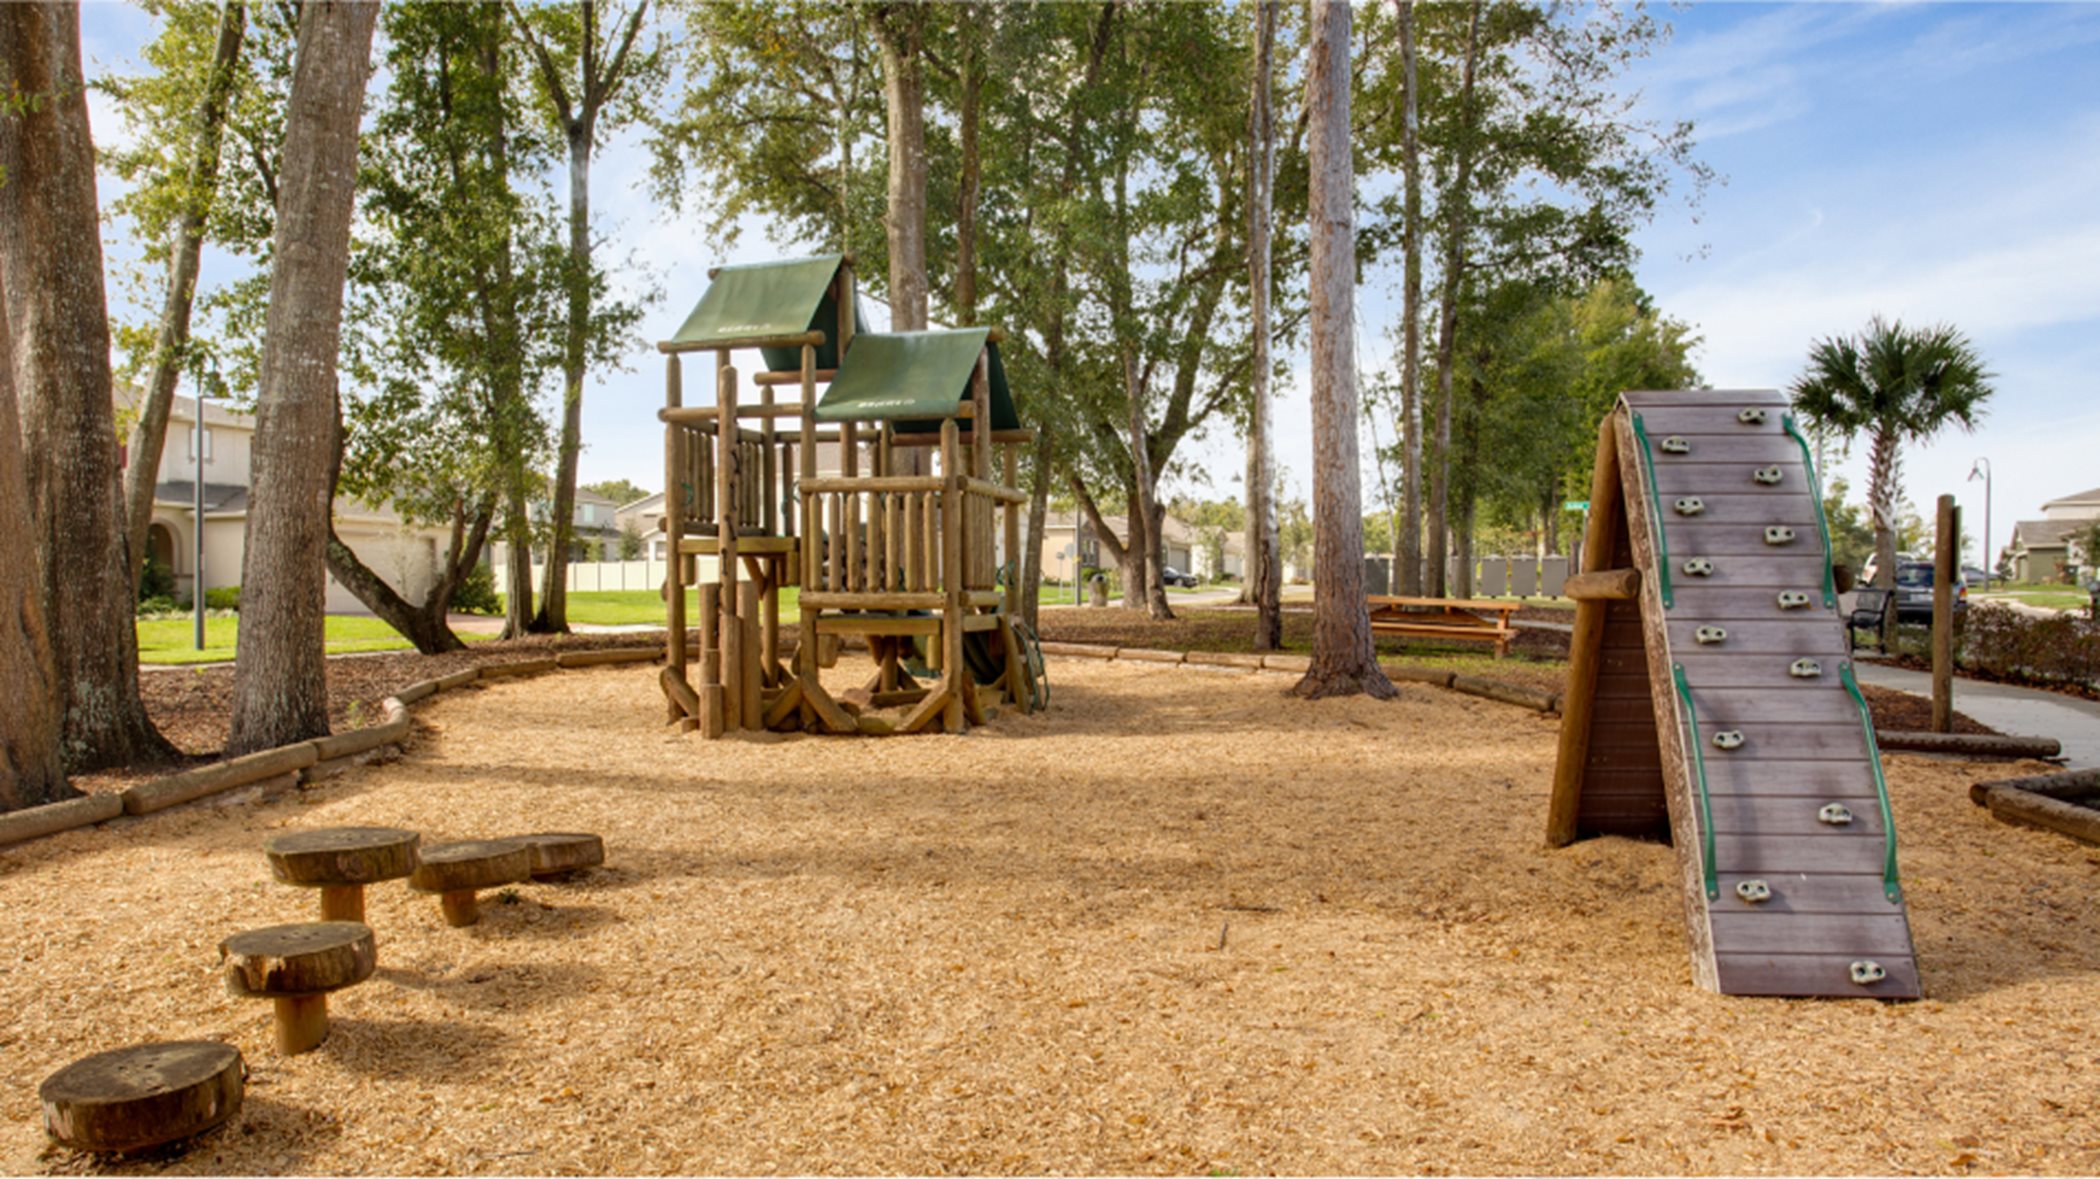 Arden Park Playground